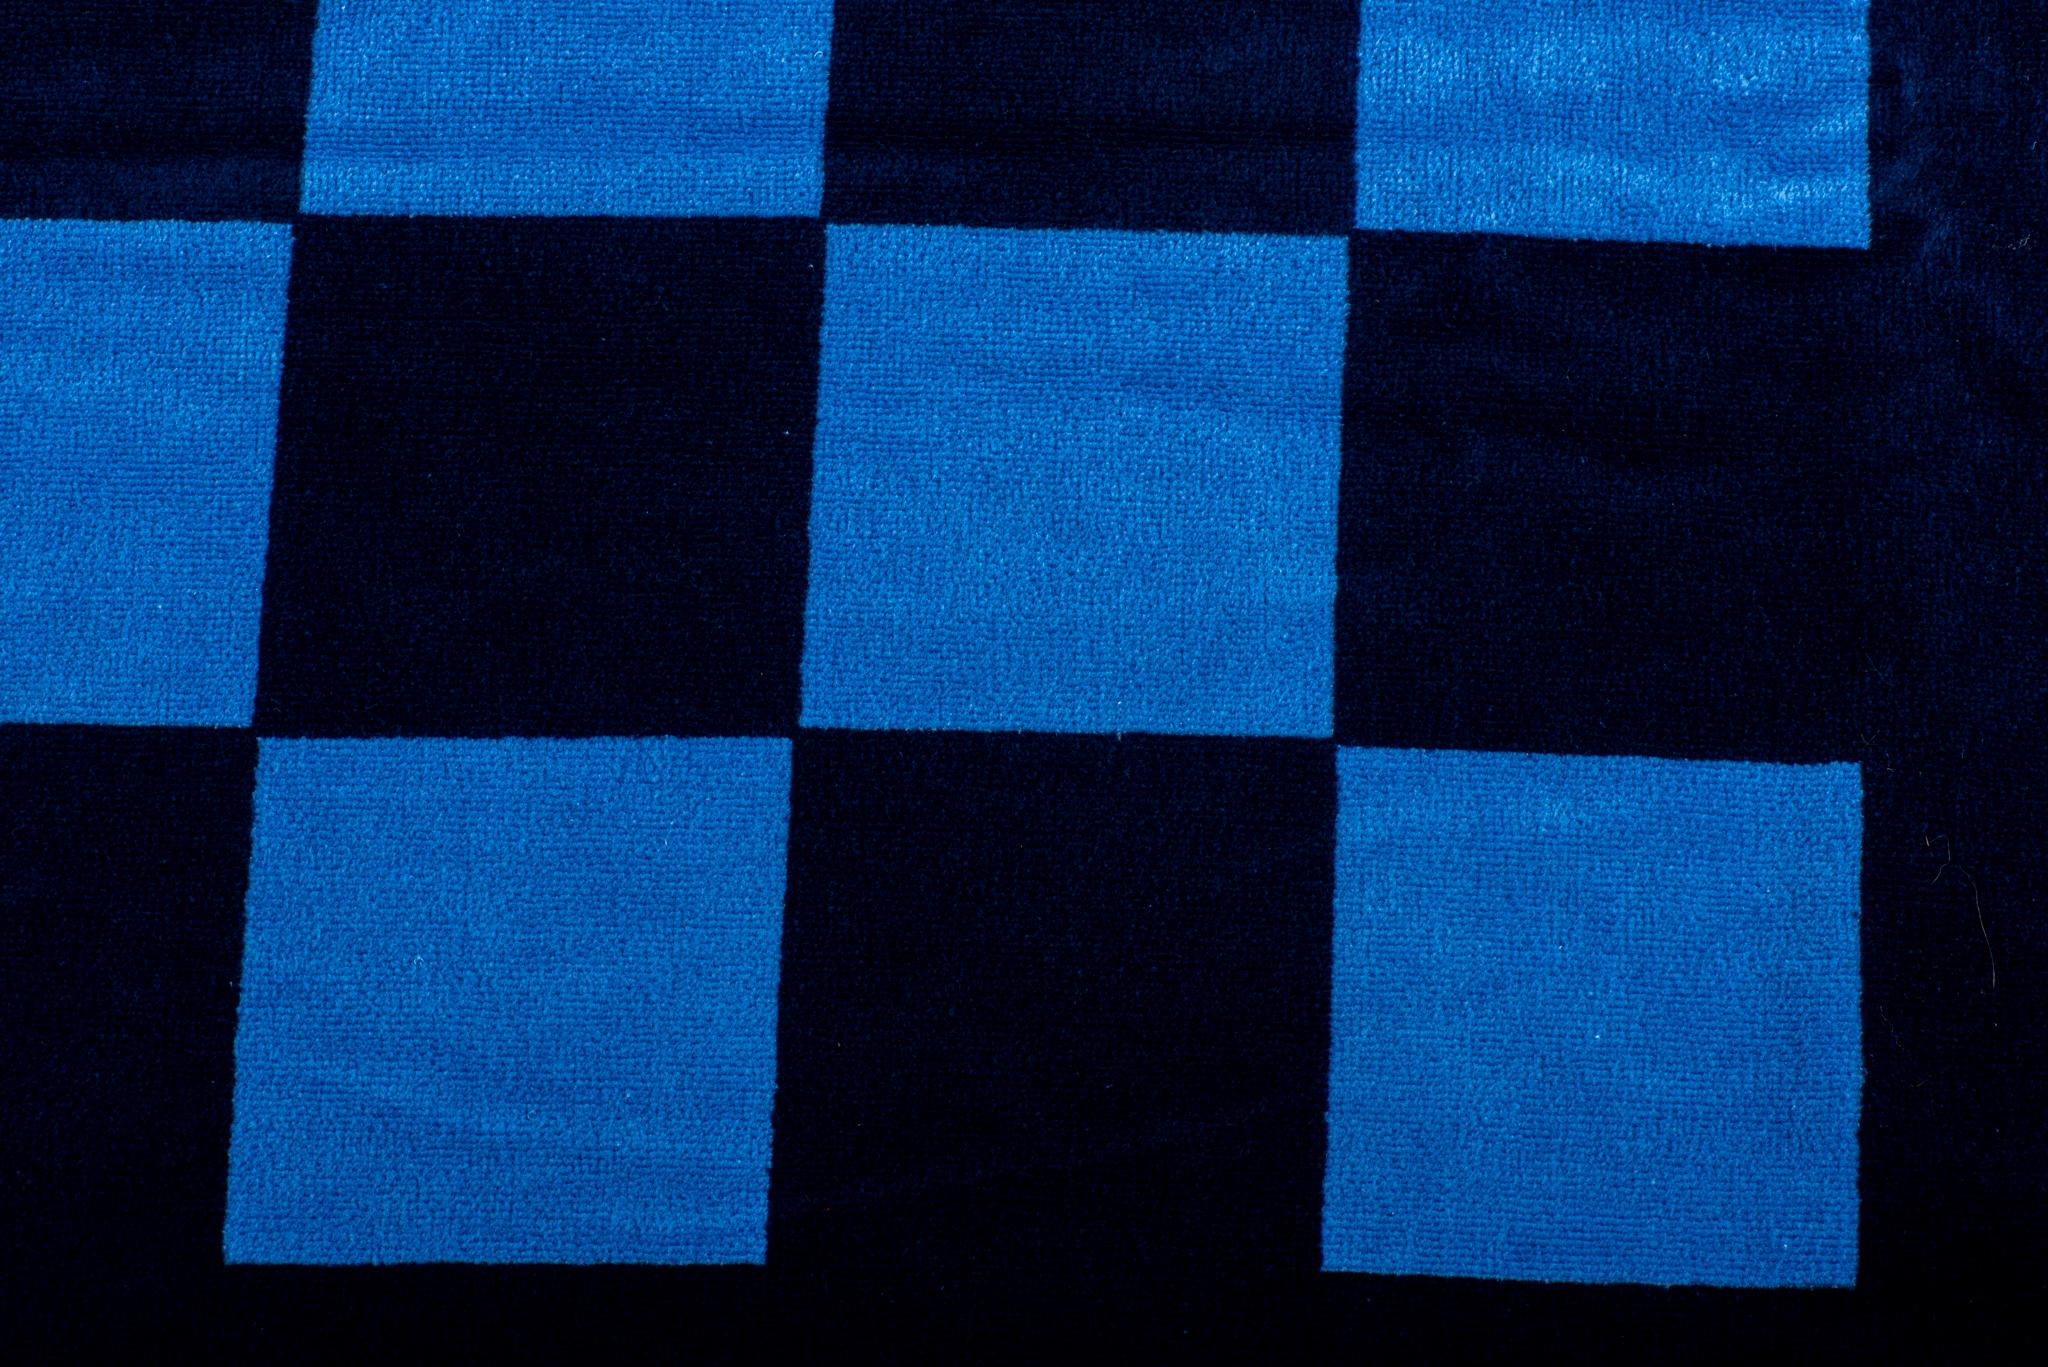 Chanel brandneue unisex Karos Strandtuch, marine und blau Kombination. Original-Pflegeetikett angebracht.